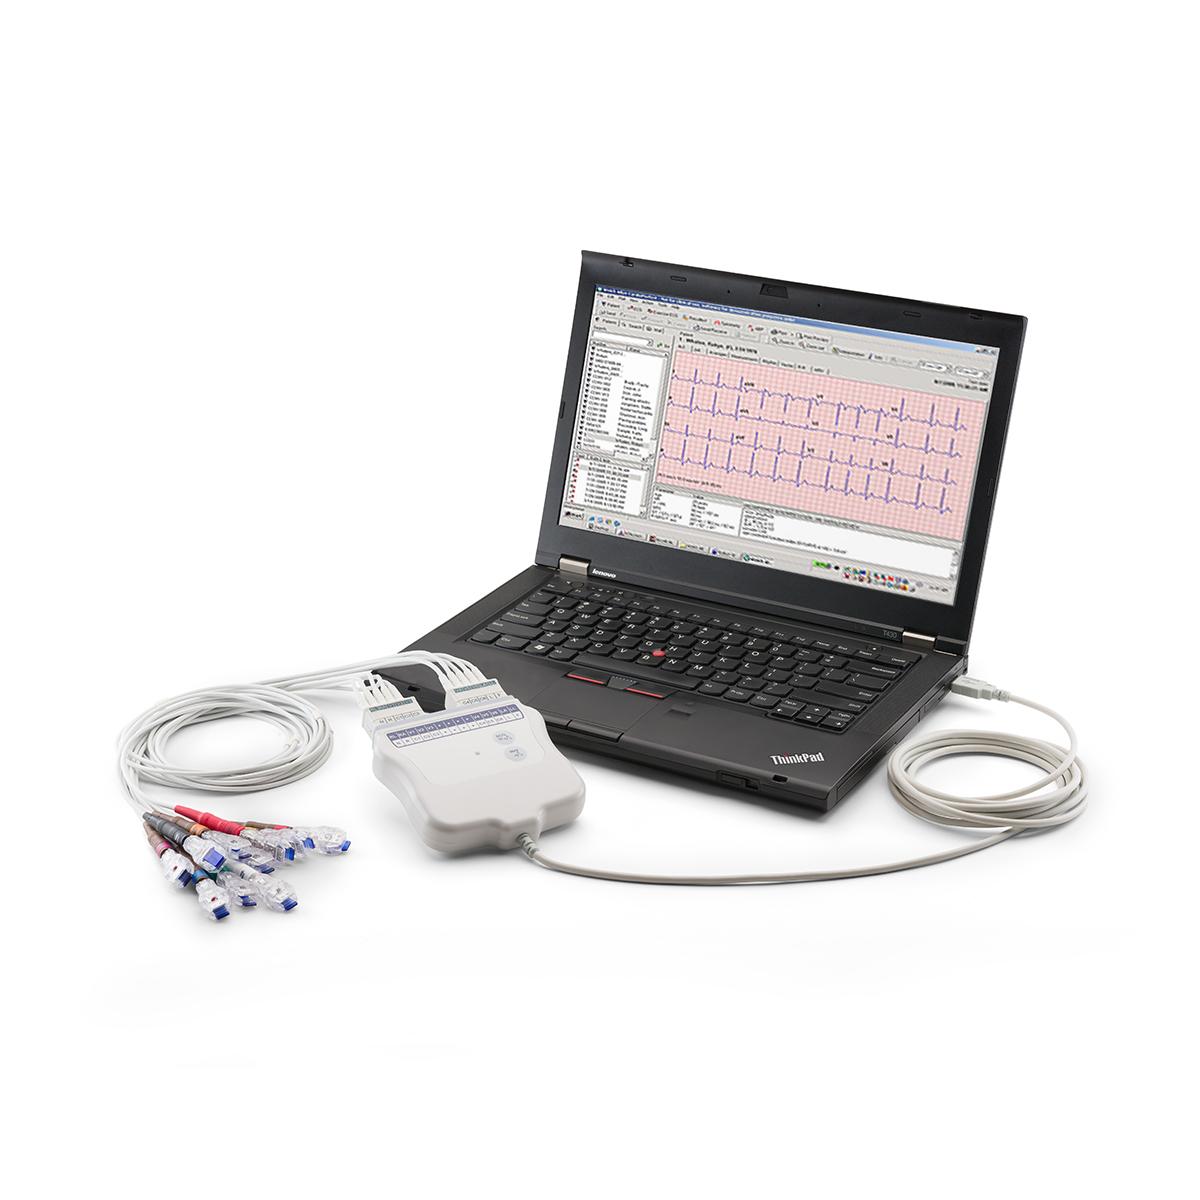 Vilo-EKG med en CardioPerfect-arbetsstation länkat via USB till en bärbar dator, ¾-vy